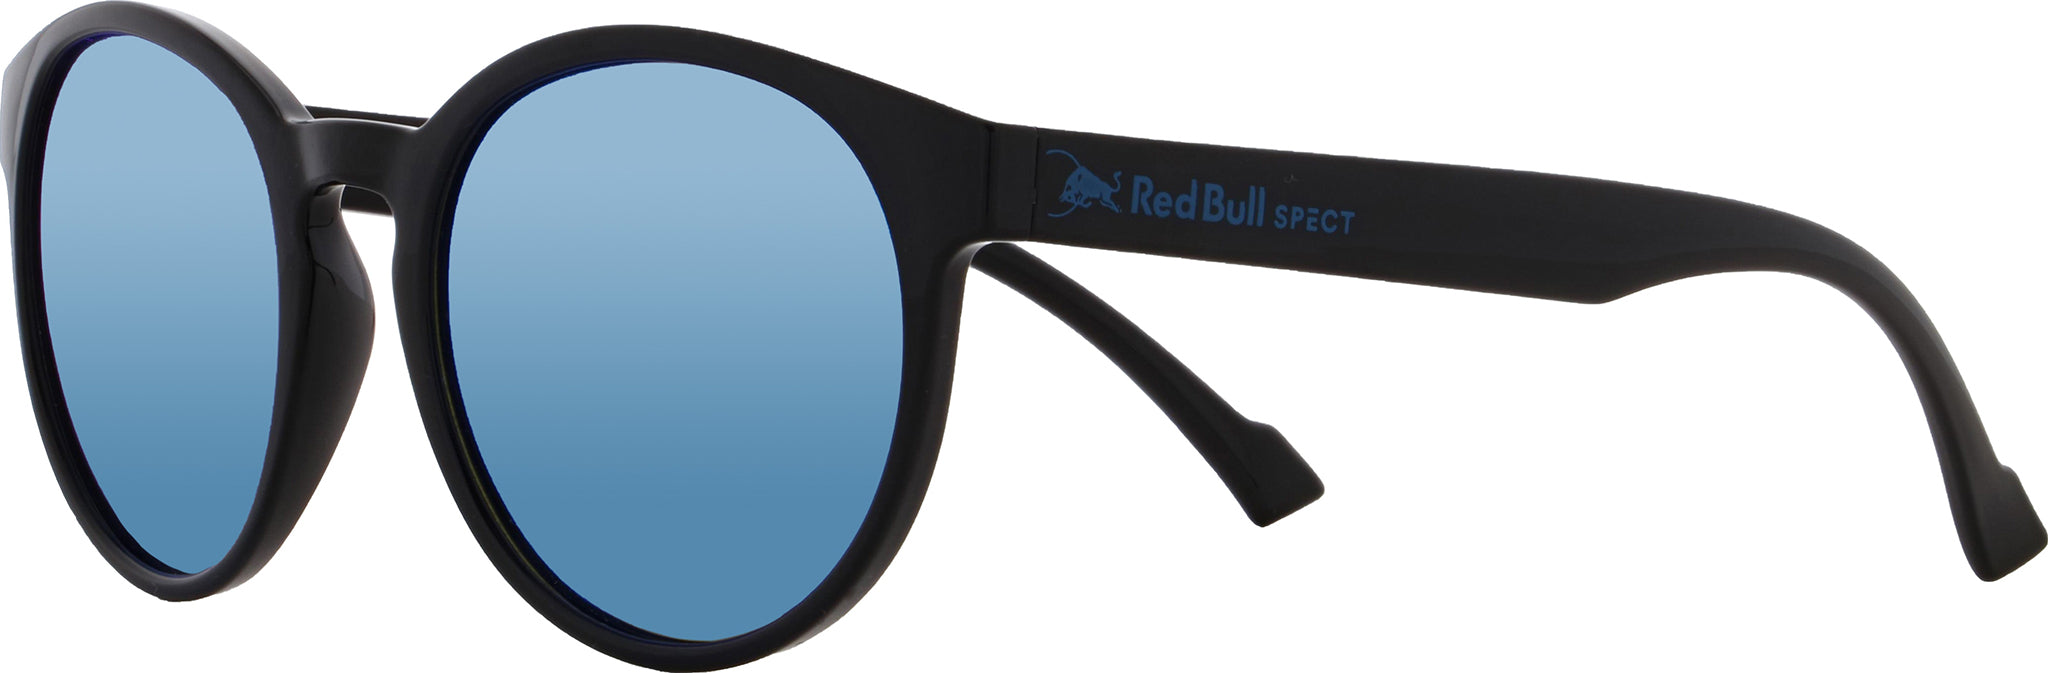 Men's sunglasses - Sport - Laceto